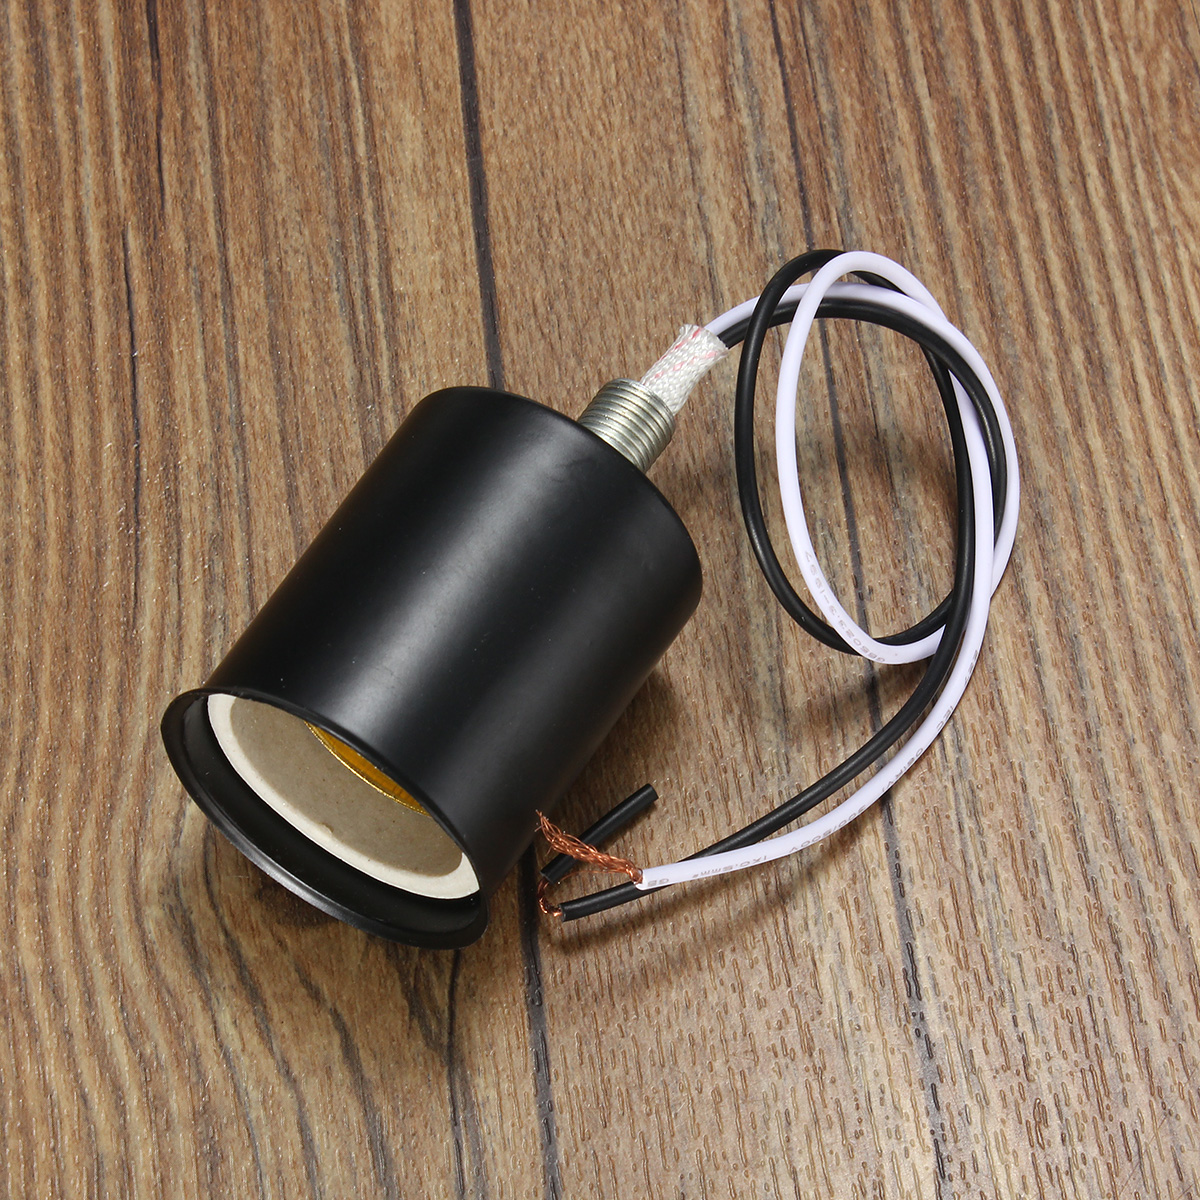 E27-Retro-Vintage-Edison-Ceramic-Screw-Round-Shape-Bulb-Adapter-Hang-Lamp-Holder-Light-Socket-Fittin-1428765-8